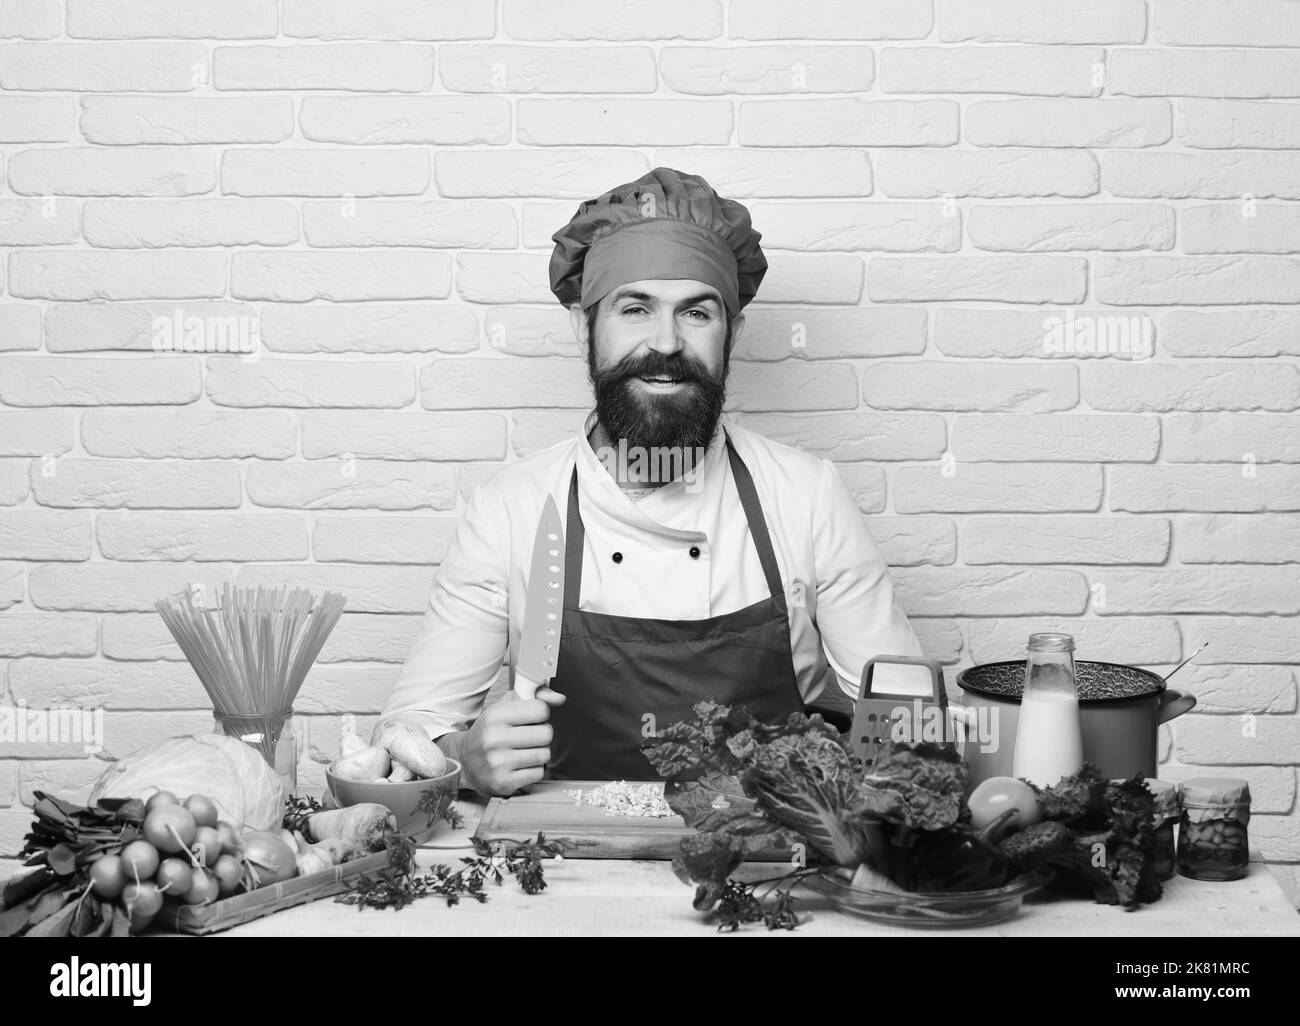 Cuisine du restaurant. Un homme avec une barbe tient le couteau sur fond blanc Banque D'Images